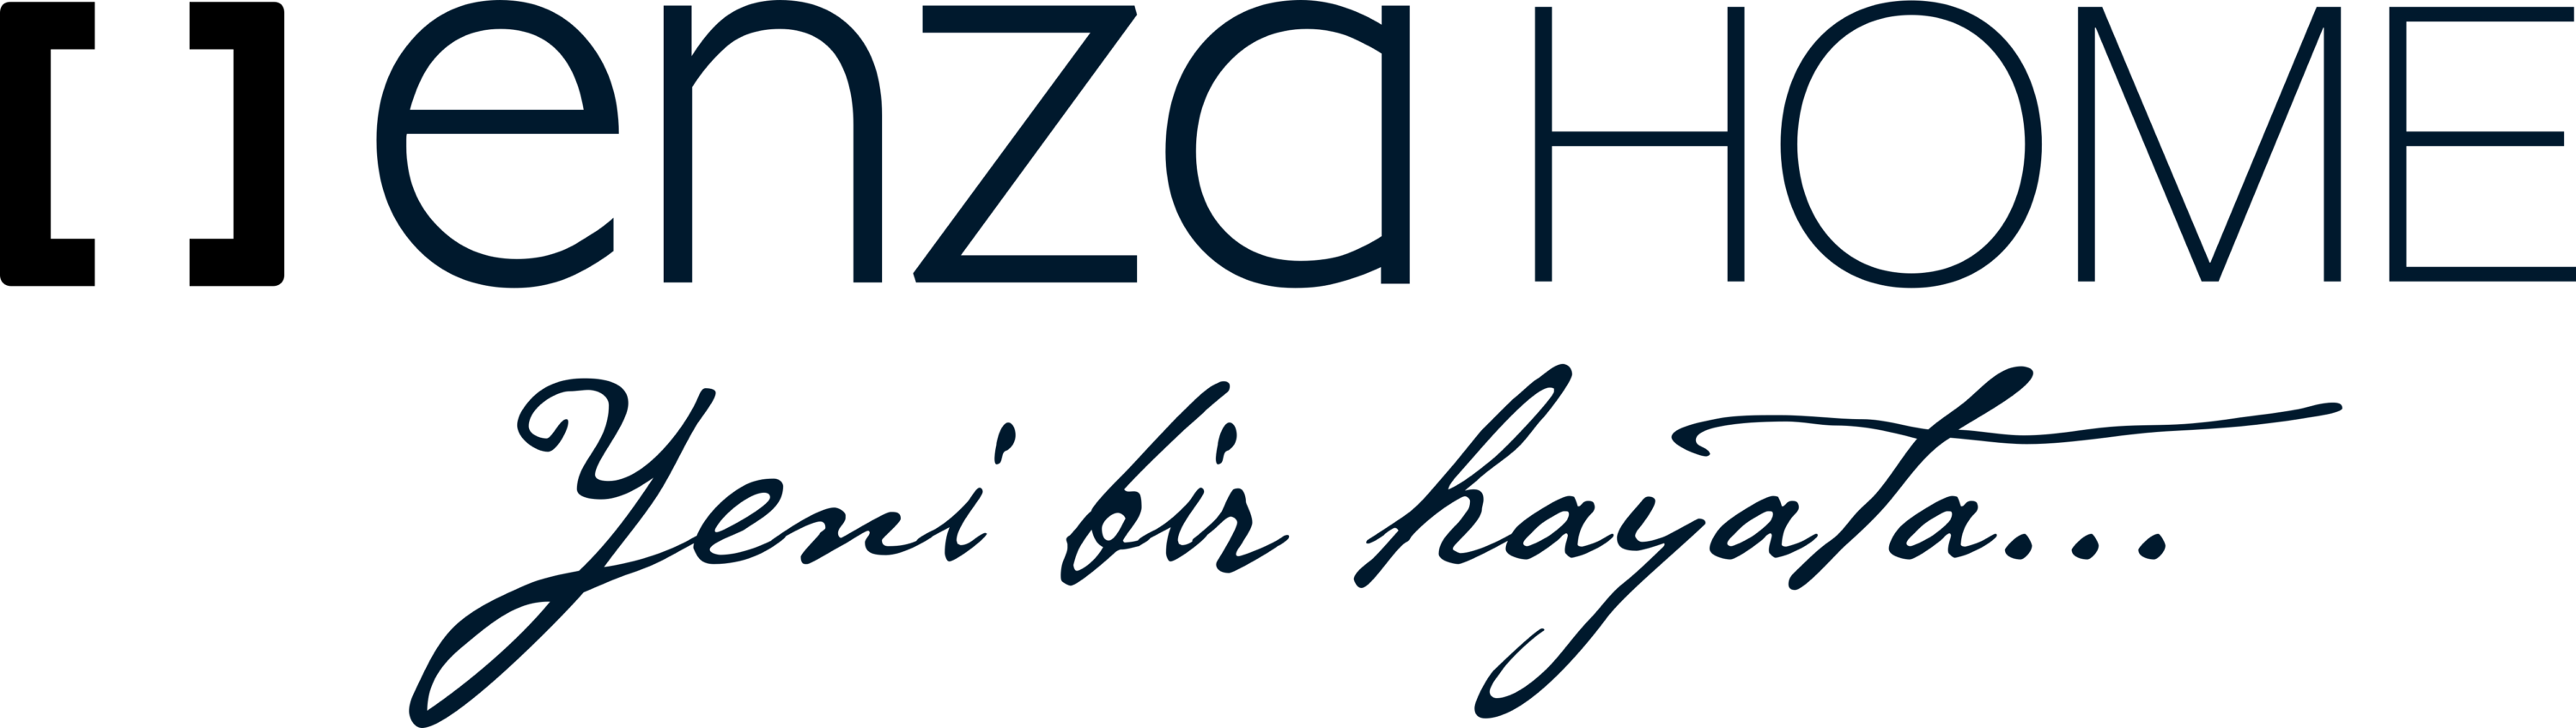 Enza Home Logo